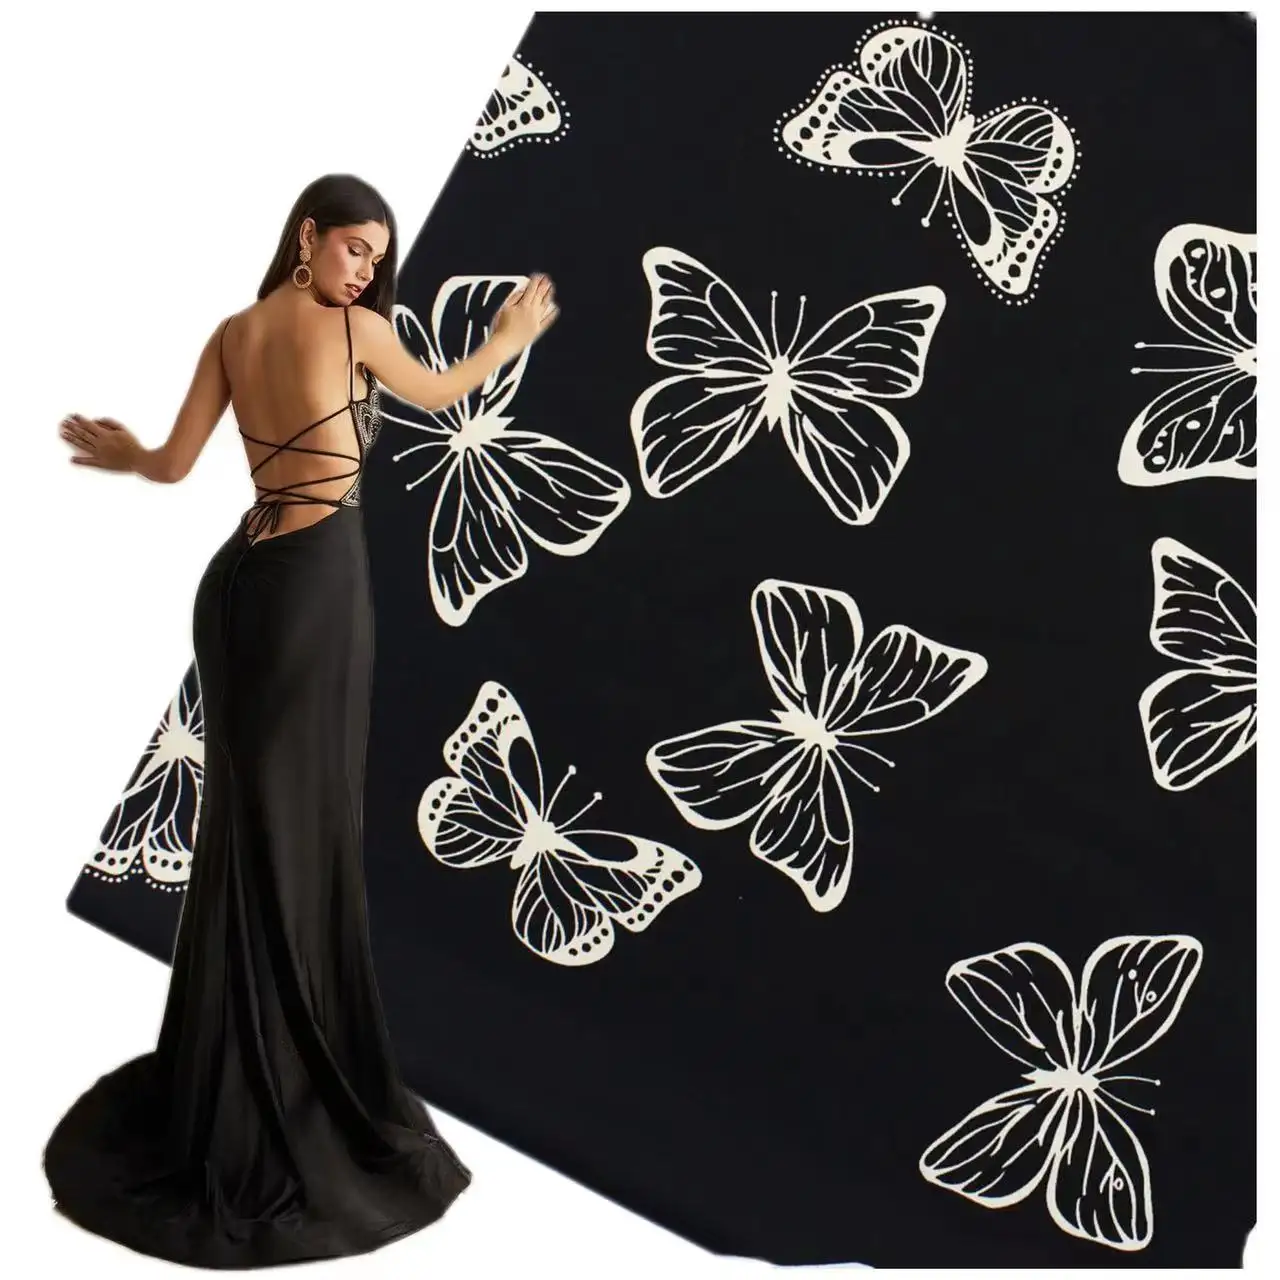 Abendkleid Kleid elegante Shinny Schmetterling Muster digital bedruckte weiche Haut Satin Seide Stoff für langes Kleid